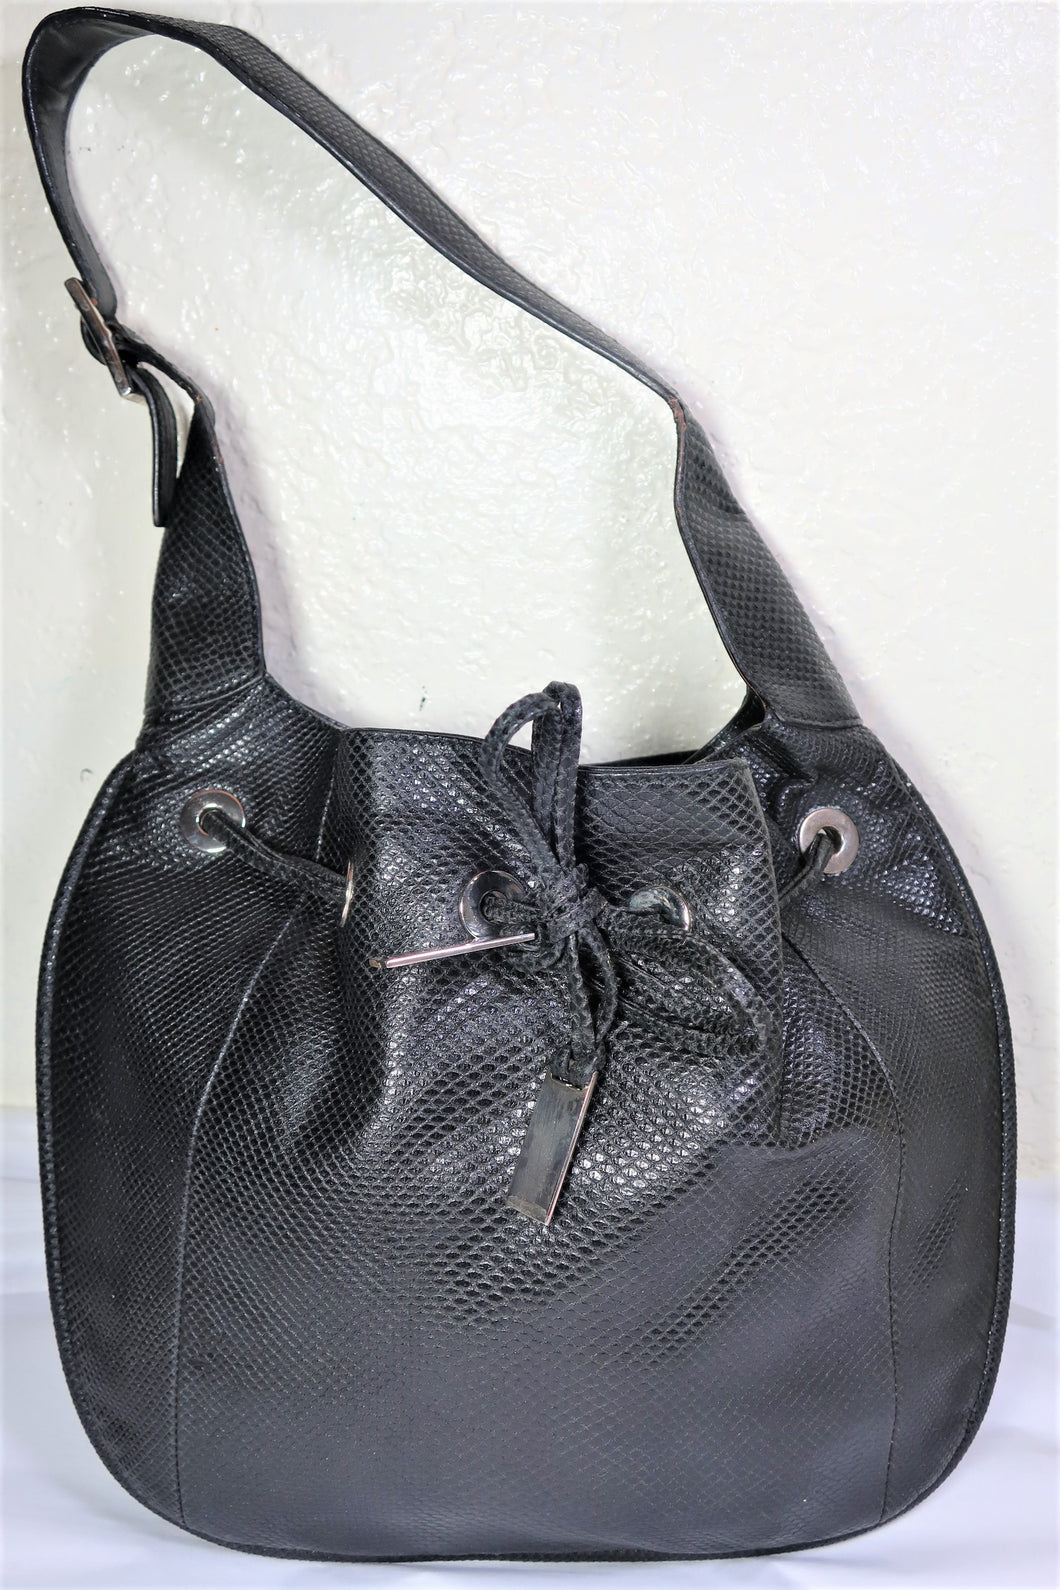 Vintage GUCCI Black Snakeprint Leather Hobo SHoulder Bag Small ITaly